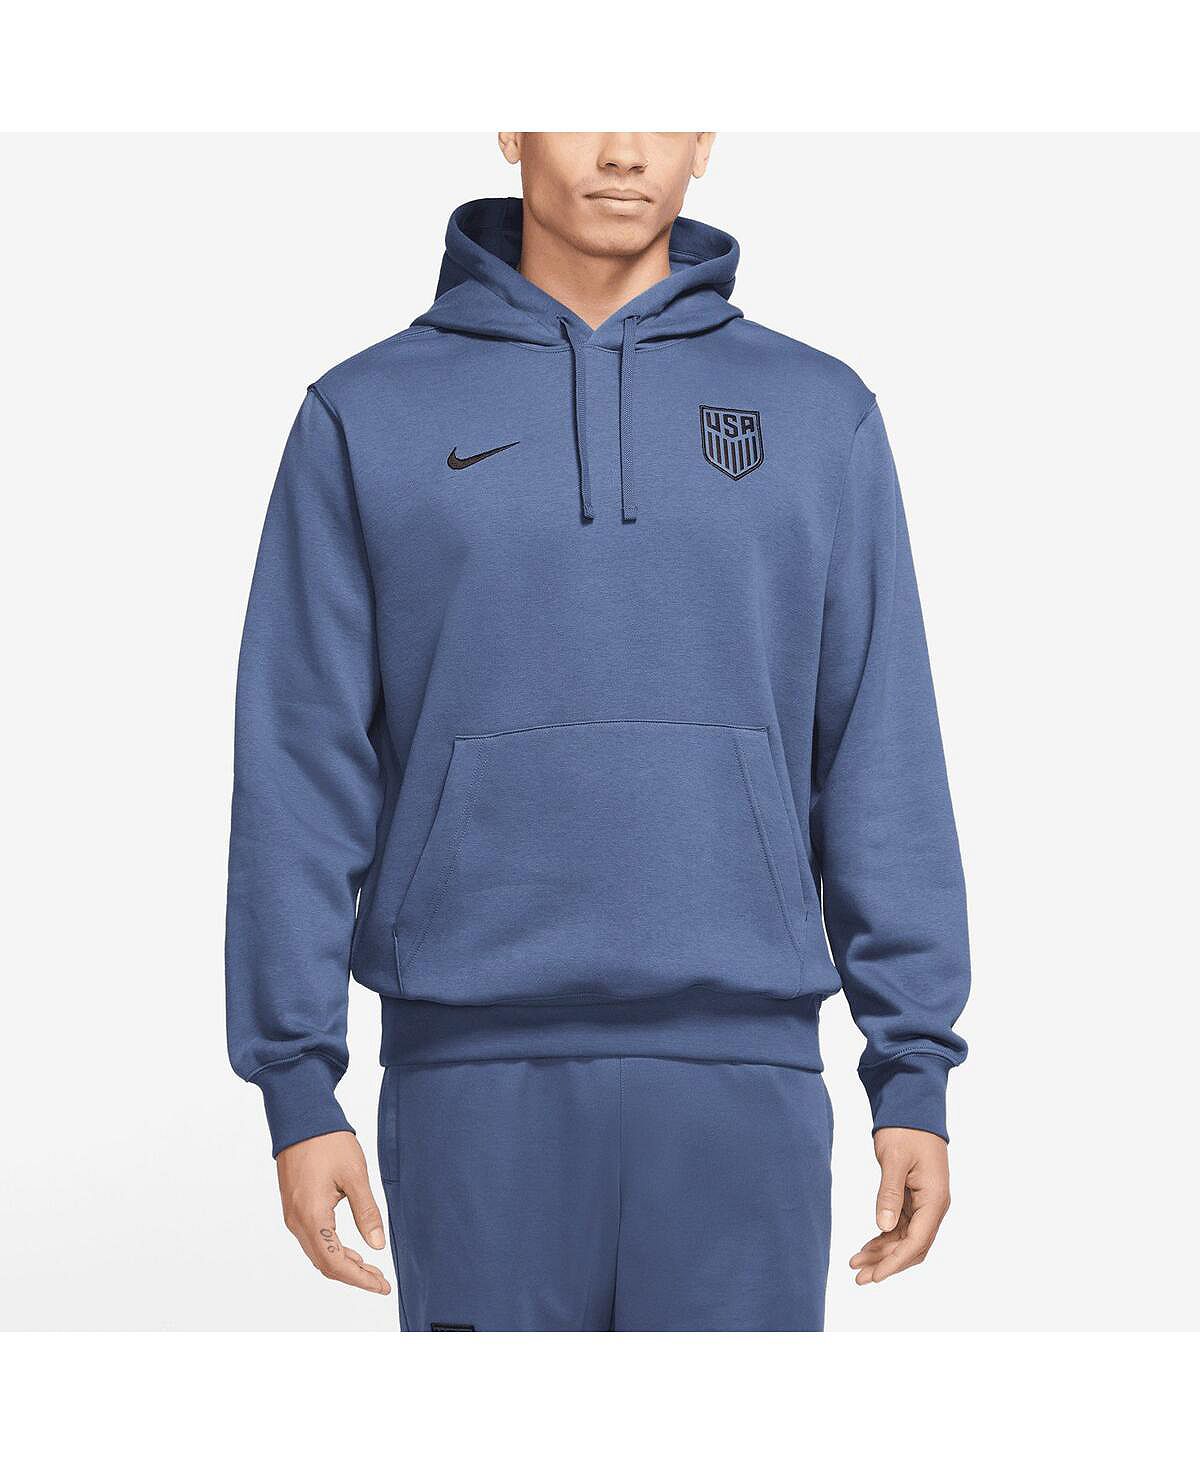 Мужской флисовый пуловер с капюшоном USMNT NSW Club темно-синего цвета Nike мужской темно синий пуловер с капюшоном usmnt standard issue nike